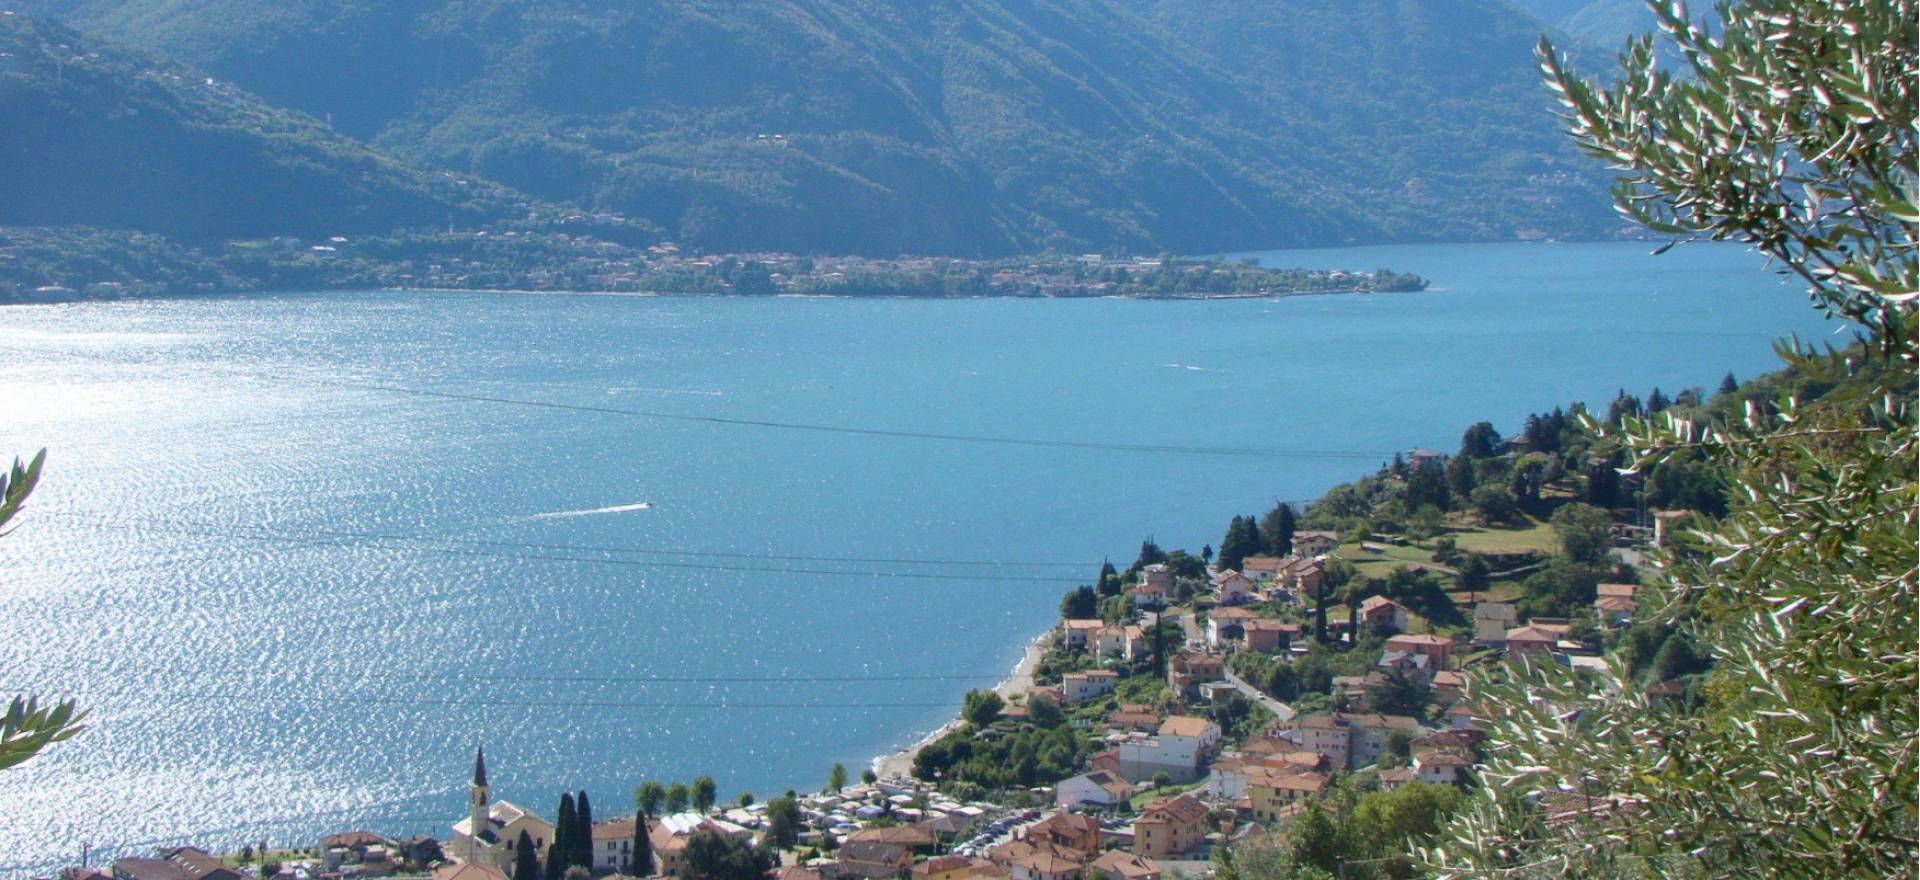 Agriturismo Lago di Como e lago di Garda Agriturismo di lusso, piscina vista lago di Como!